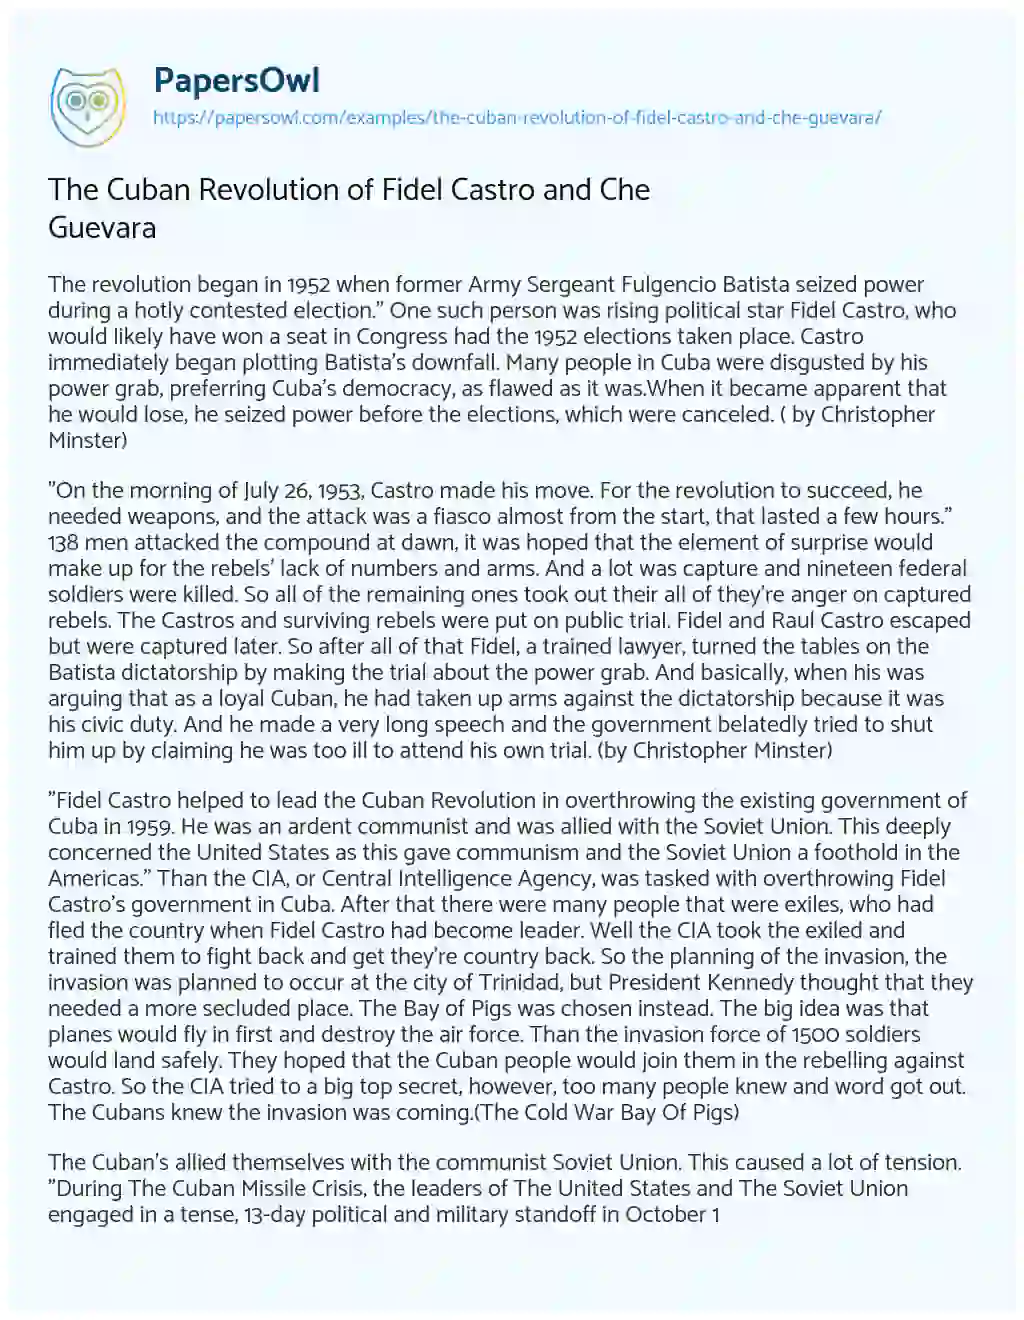 The Cuban Revolution of Fidel Castro and Che Guevara essay